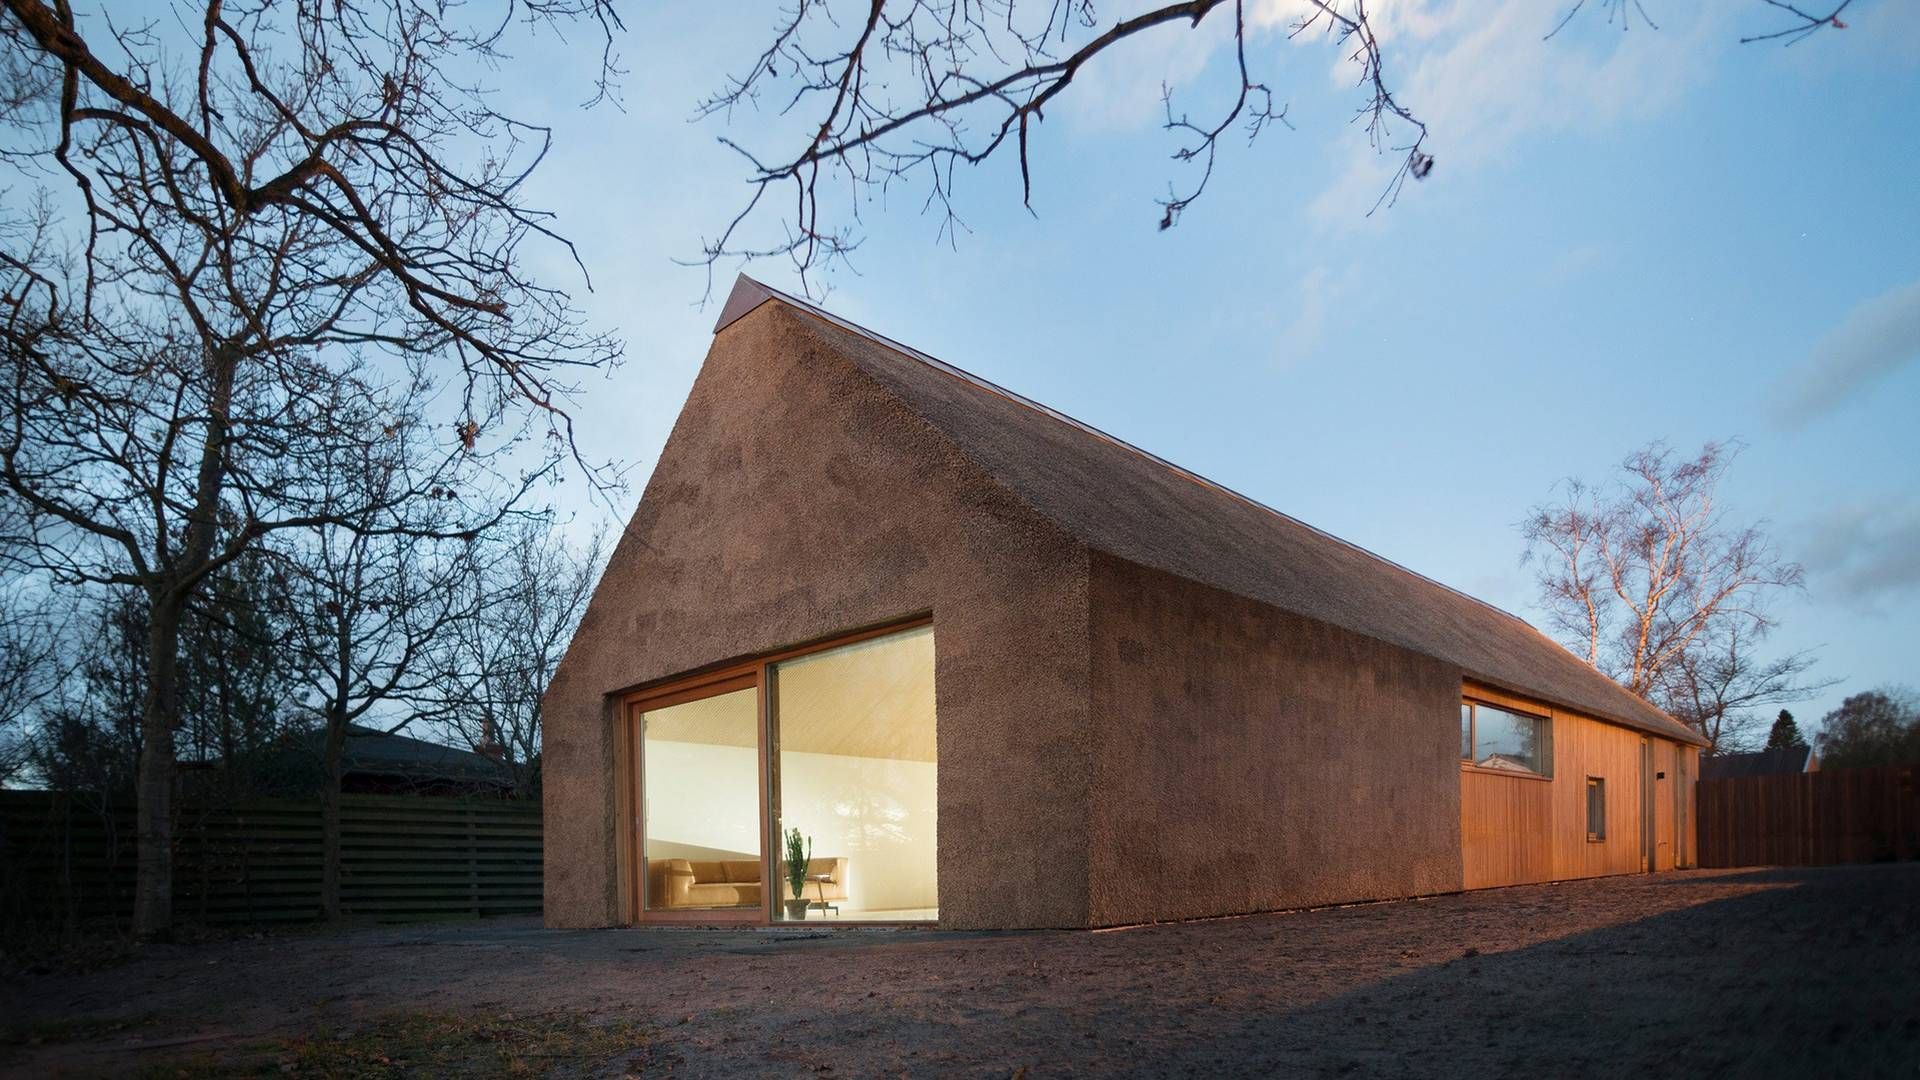 Et arkitekttegnet sommerhus i Østjylland er omdrejningspunktet for et aftalekompleks, der ifølge kuratellet har haft til formål at unddrage konkursboets kreditorer. | Foto: PR / Loop Architects